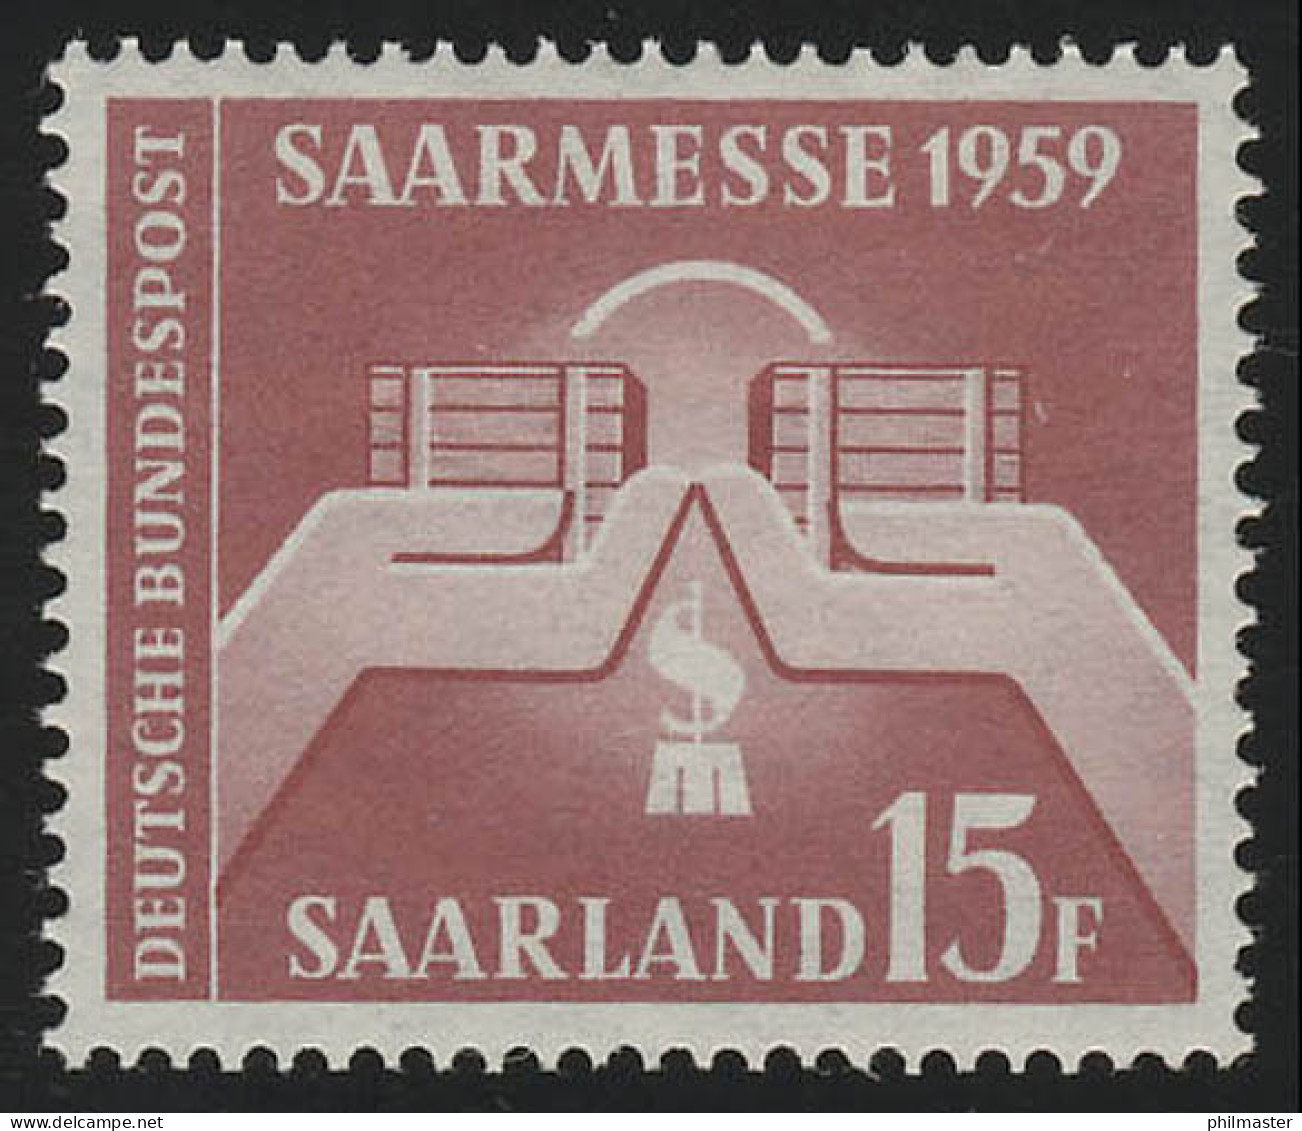 Saarland 447 Saarmesse Saarbrücken 1959, ** - Nuovi